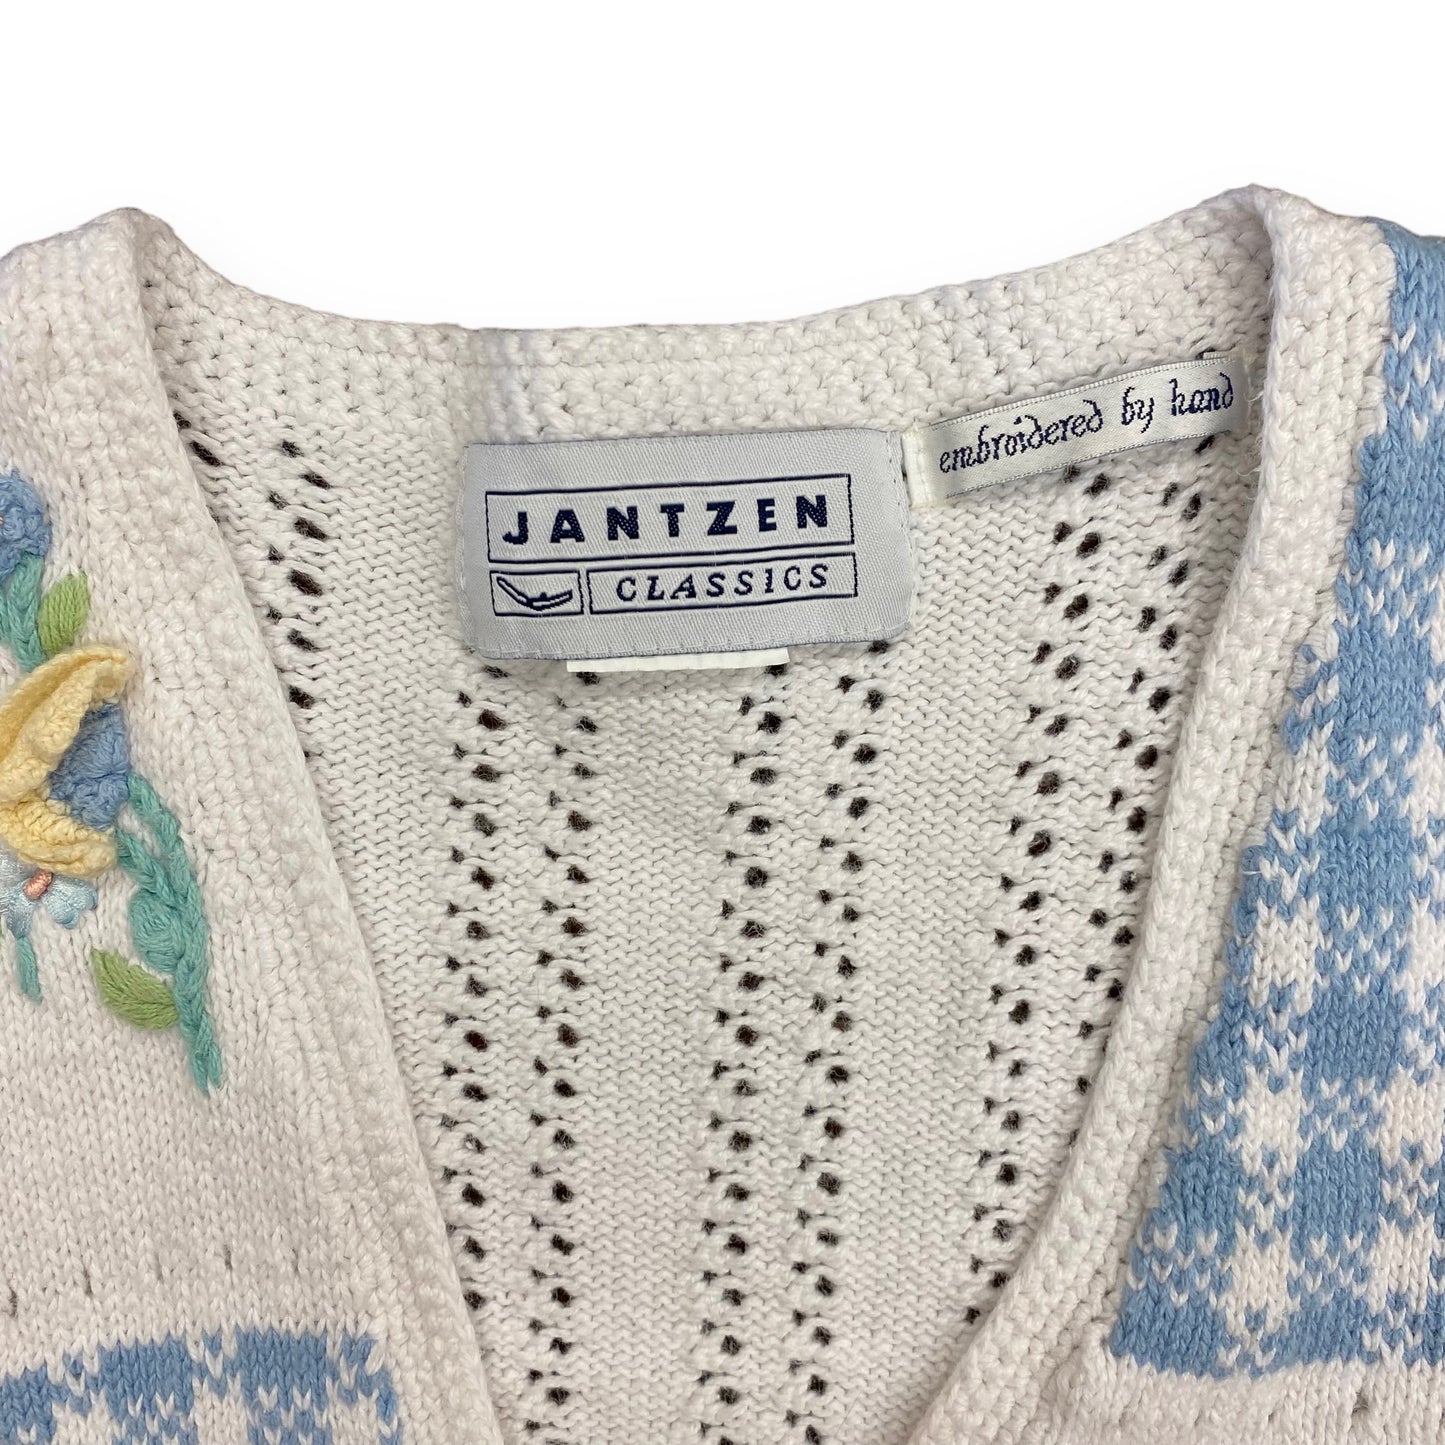 Vintage 1990s Jantzen Knit Floral Vest - Size Large